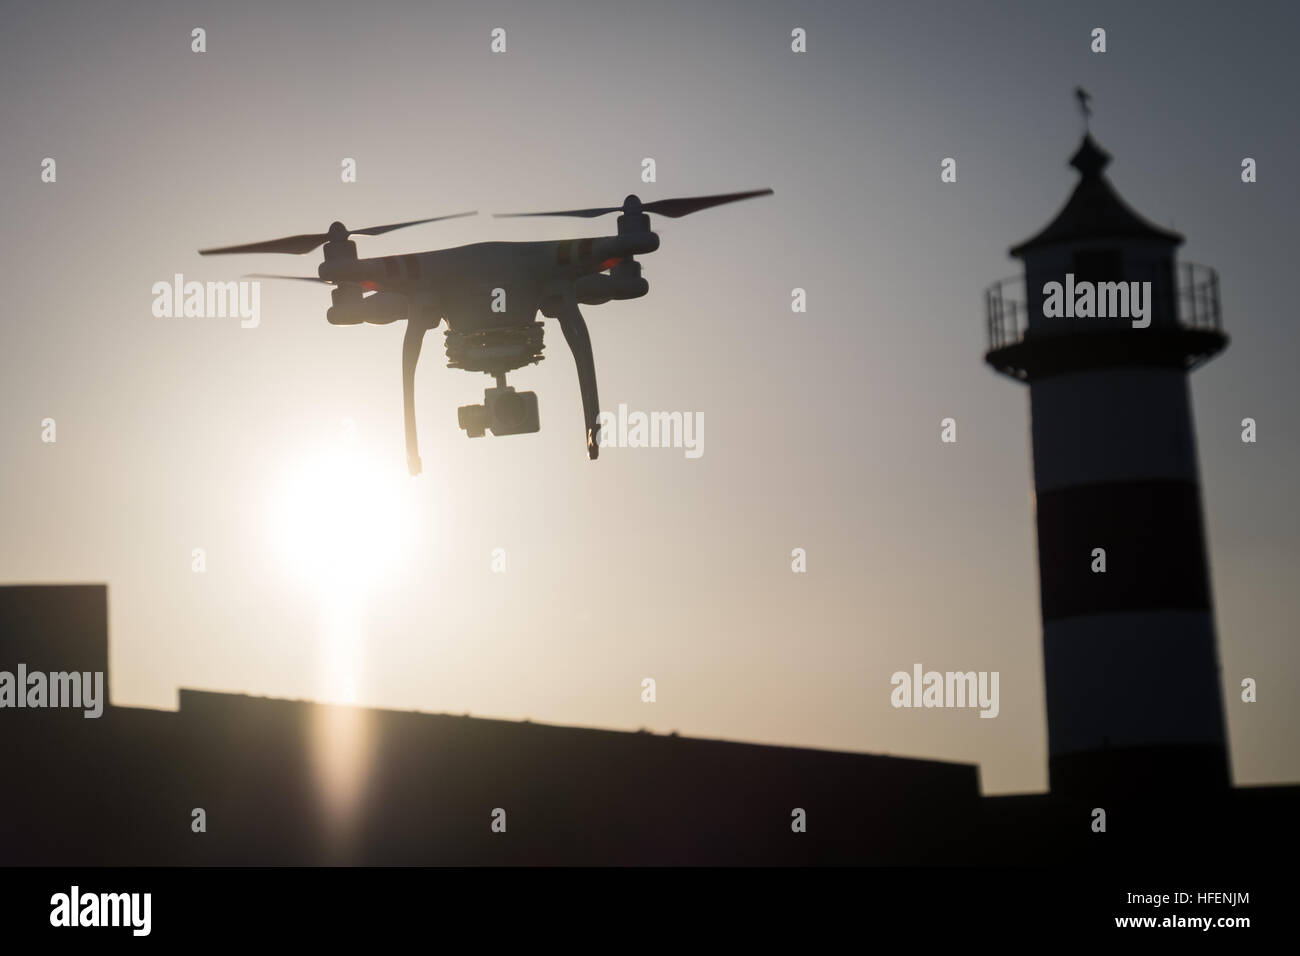 A DJI Phantom 3 Standard drone in flight near Southsea Castle Stock Photo